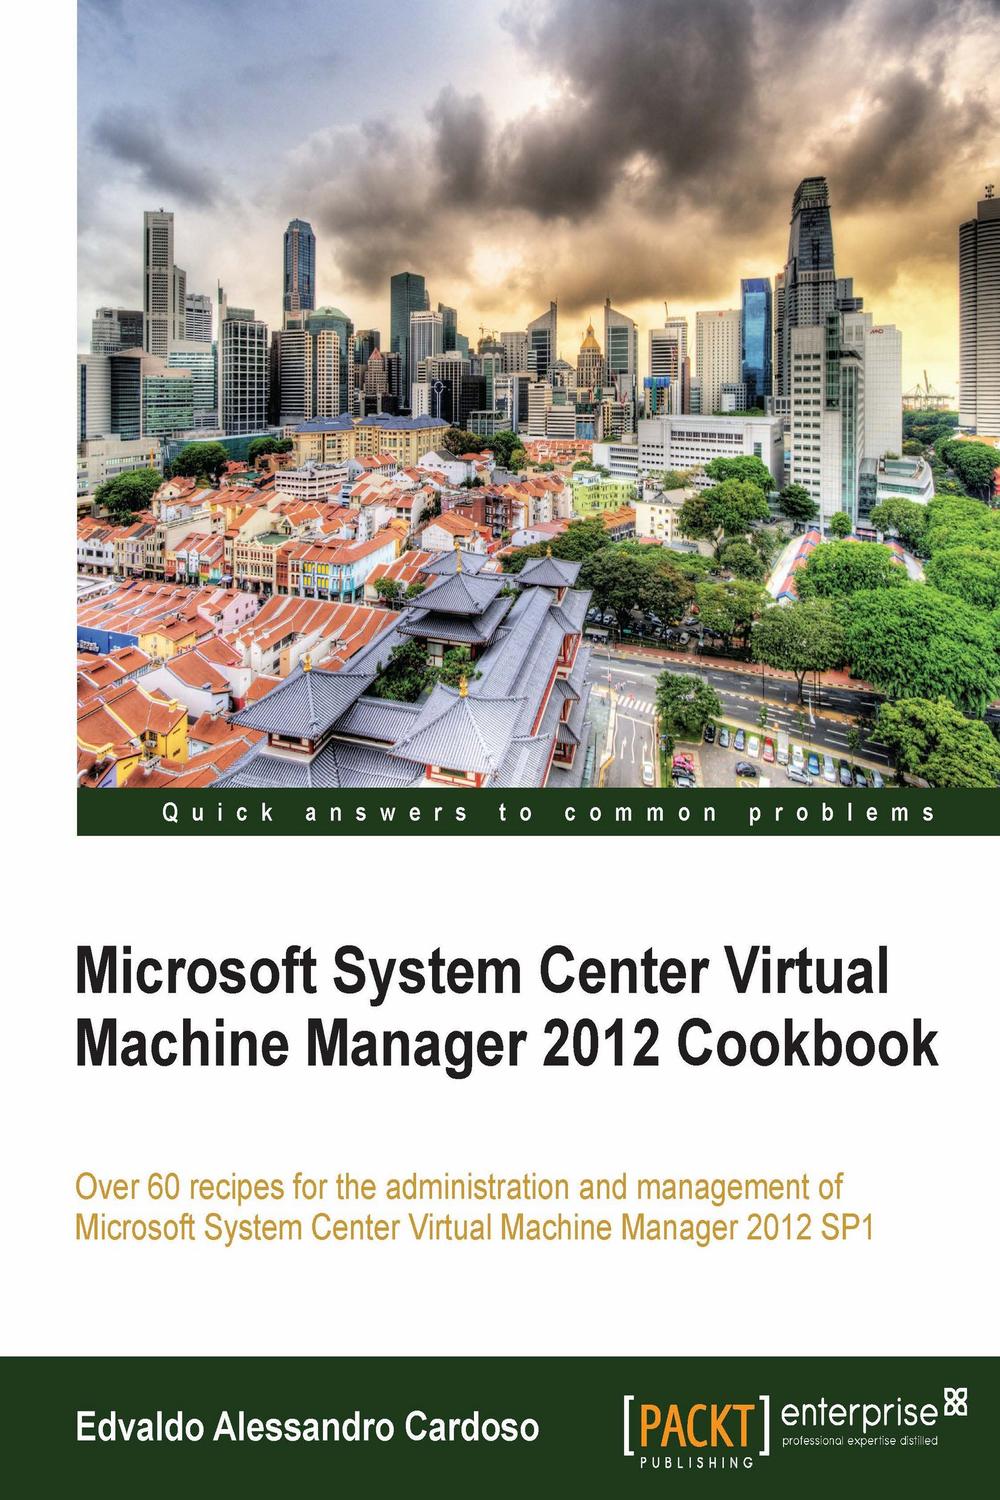 Microsoft System Center Virtual Machine Manager 2012 Cookbook - Edvaldo Alessandro Cardoso